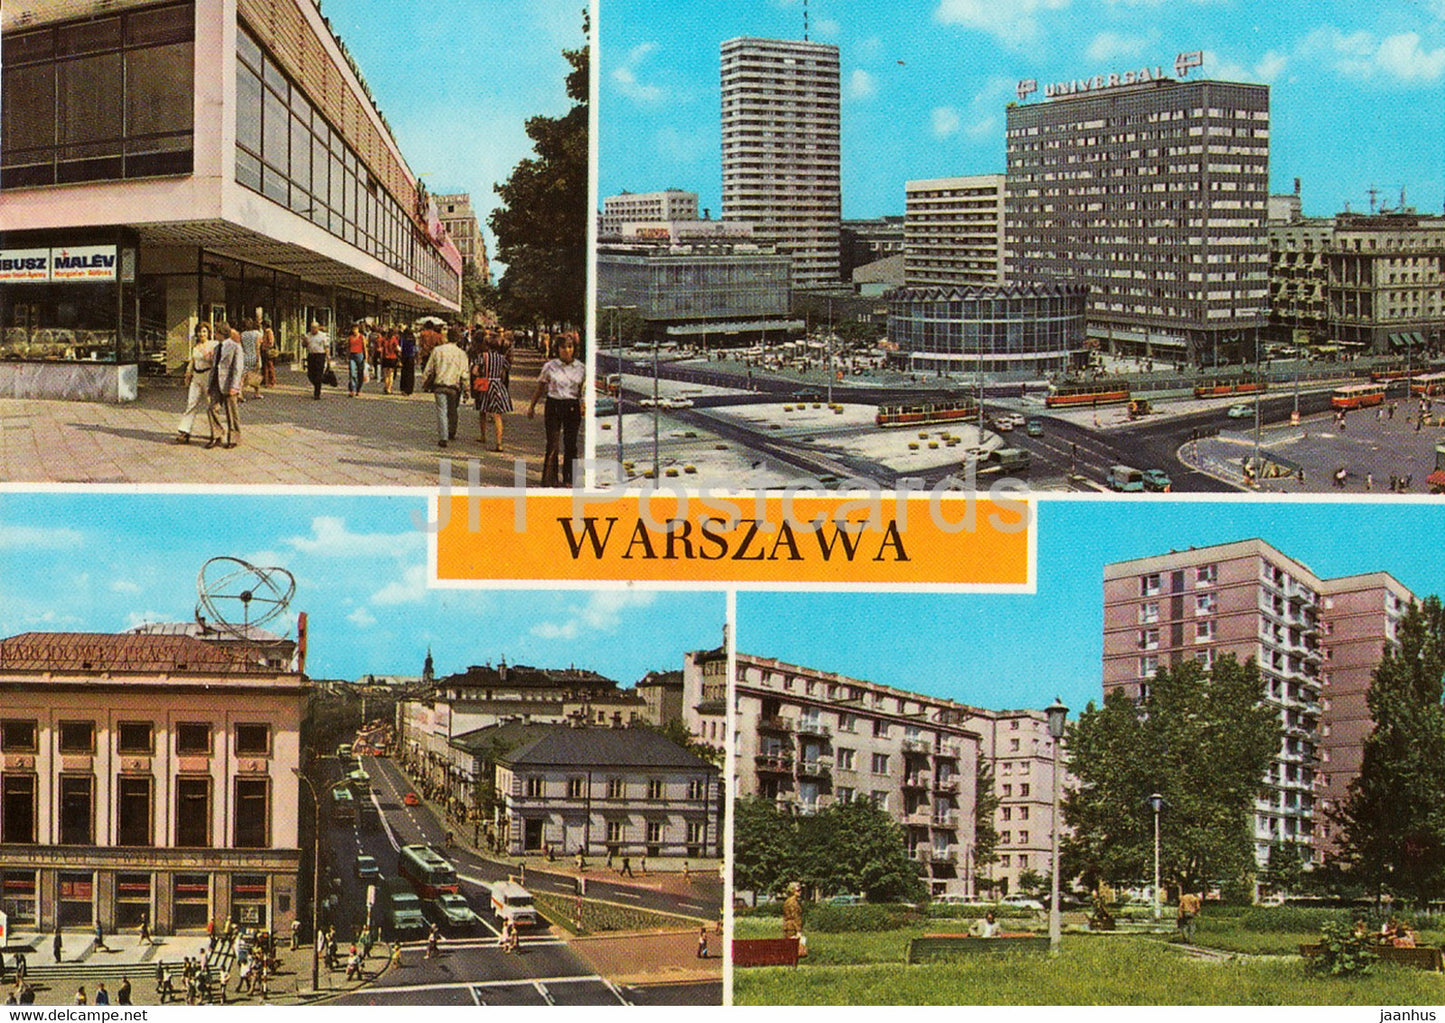 Warszawa - Warsaw - Marszalkowska street - Nowy Swiat street - tram - multiview - Poland - unused - JH Postcards